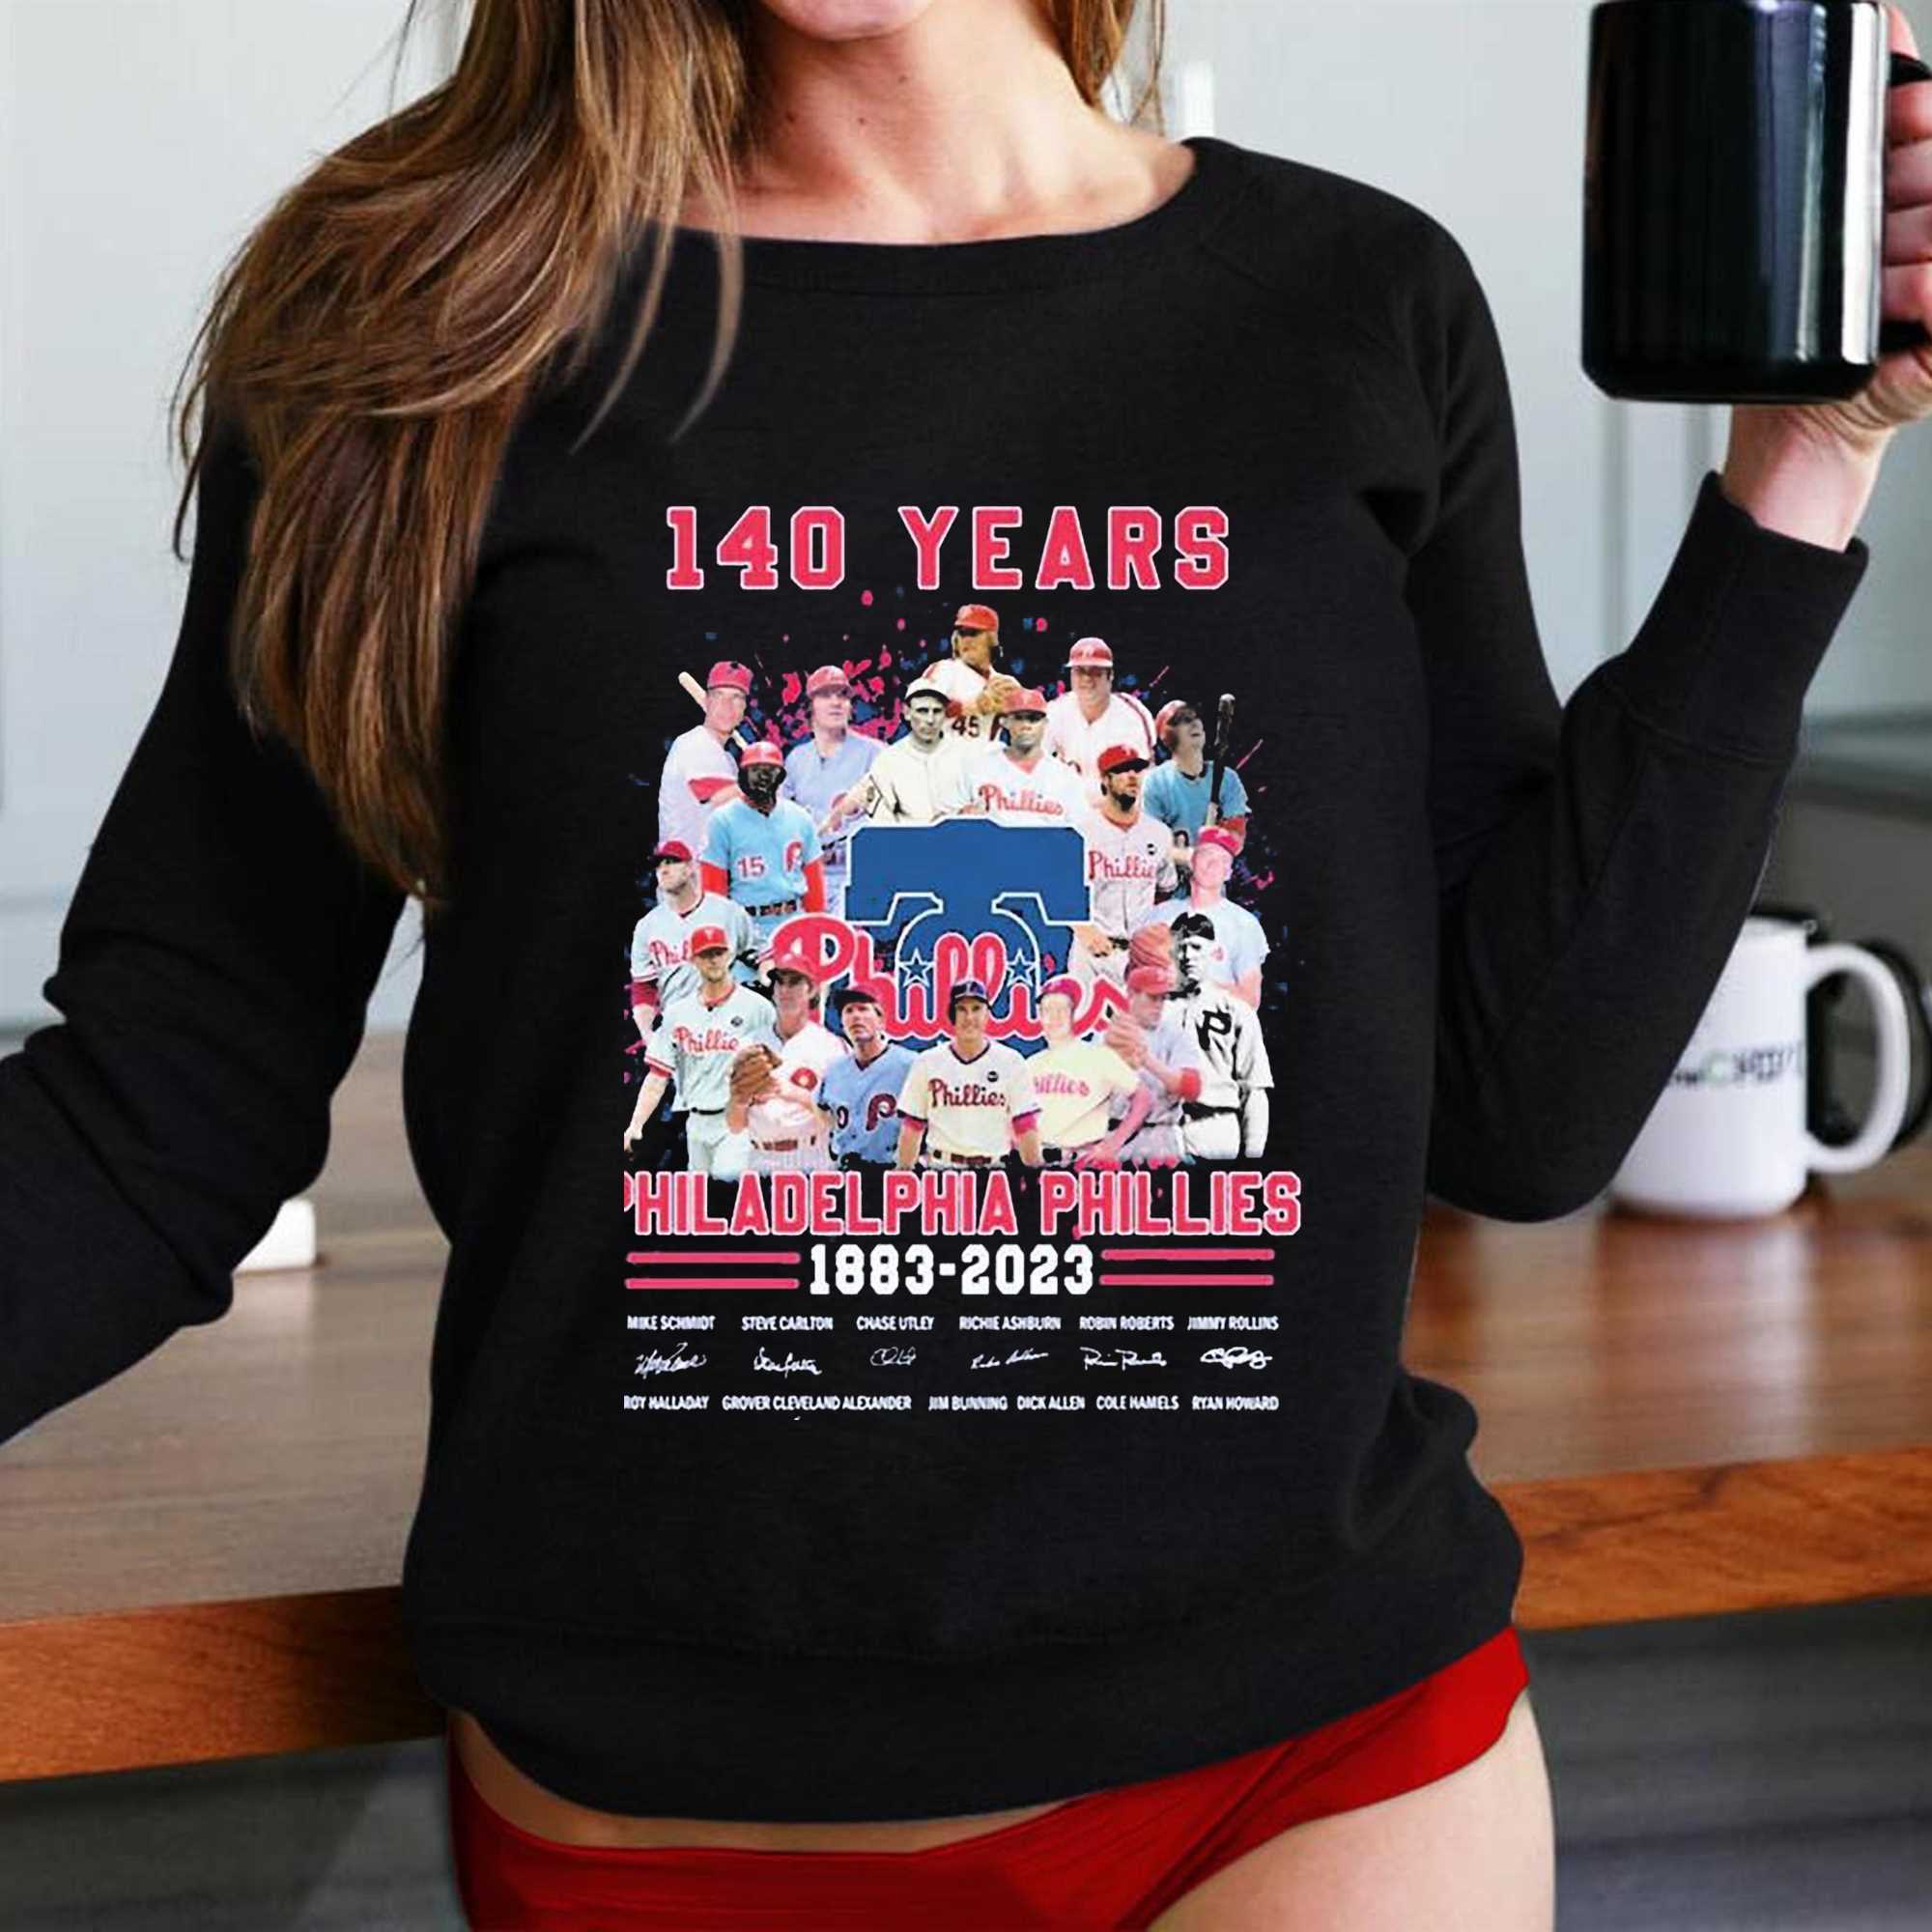 Philadelphia Phillies Baseball 1883 Vintage Best Sweatshirt, T